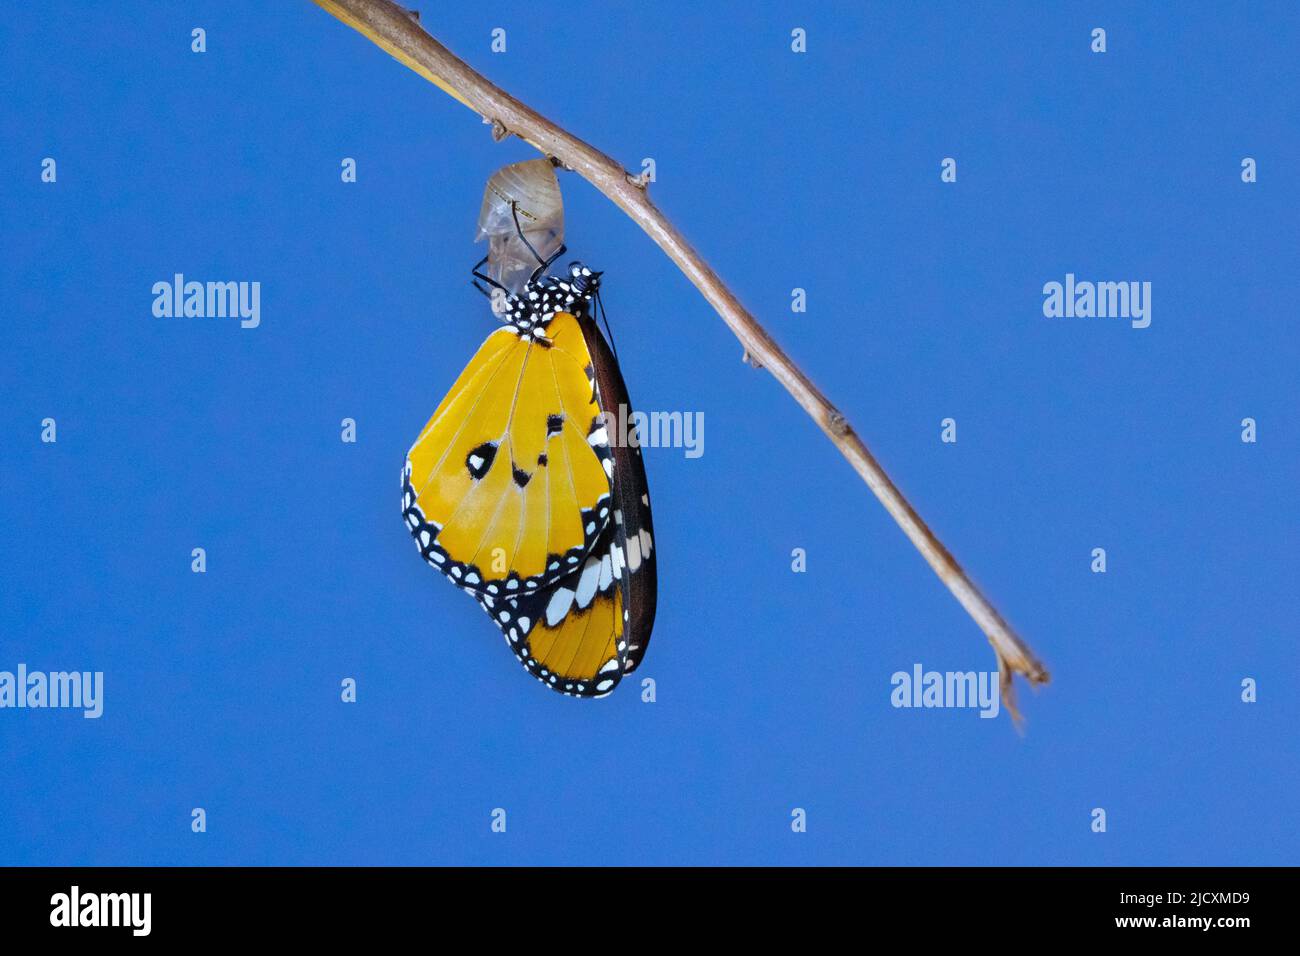 Schmetterling (Danaus chrysippus), Afrikanischer Monarch oder gewöhnlicher Tiger-Schmetterling, der aus seinem Kokon hervortritt. Dieser Schmetterling kommt in Afrika, Indien, Süd-Eas vor Stockfoto